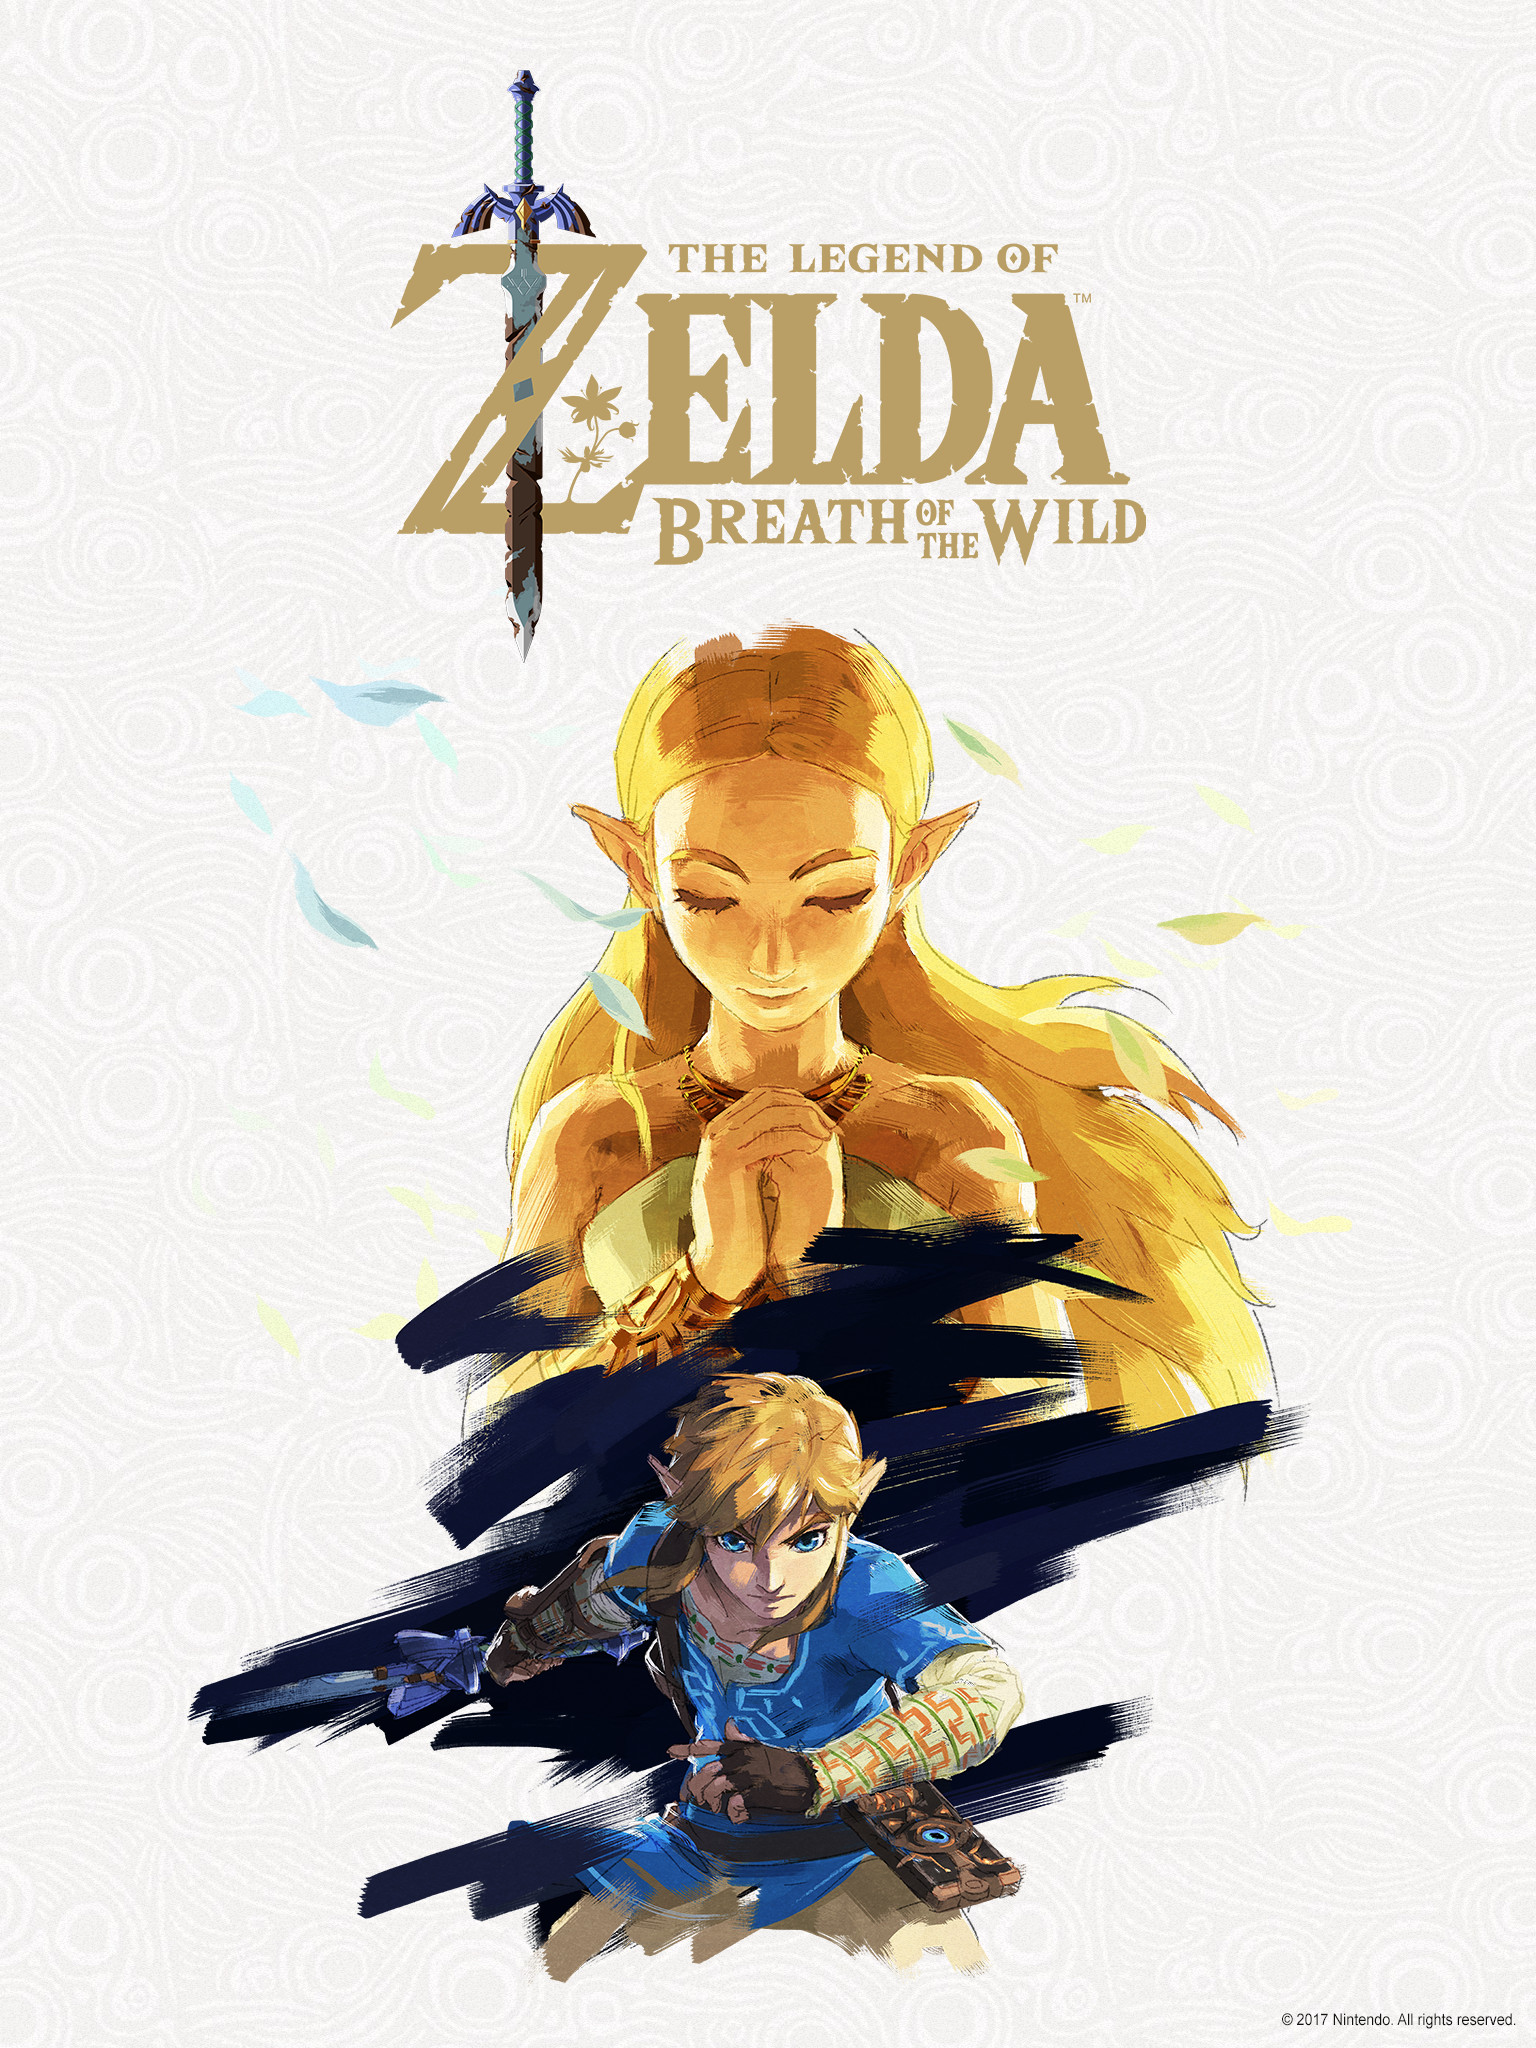 The Legend of Zelda: Breath of the Wild 2 Wallpapers